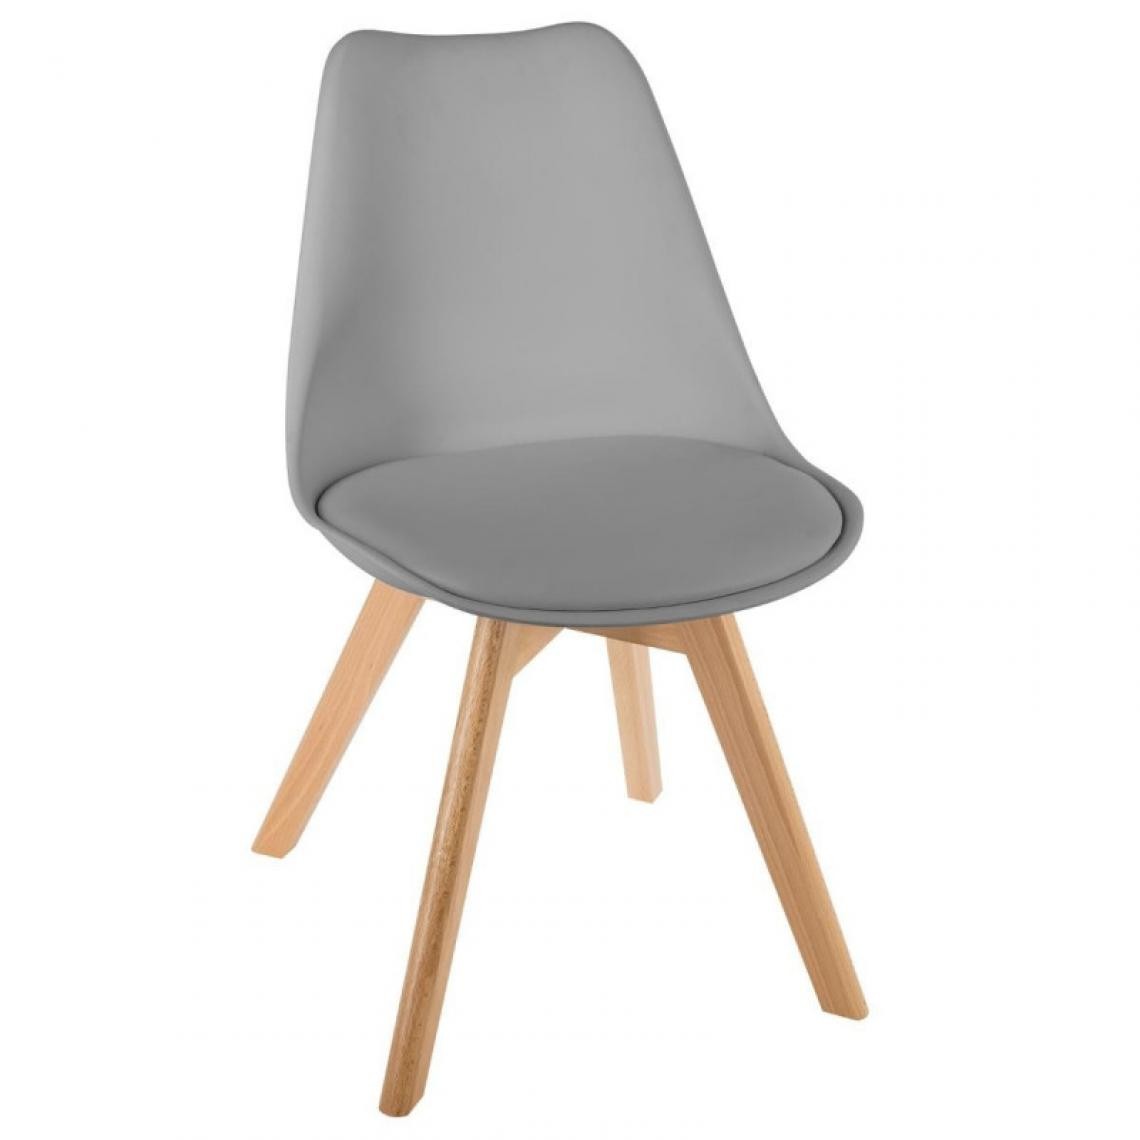 Atmosphera, Createur D'Interieur - Lot de 2 chaises style scandinave baya atmosphera - gris clair - Chaises